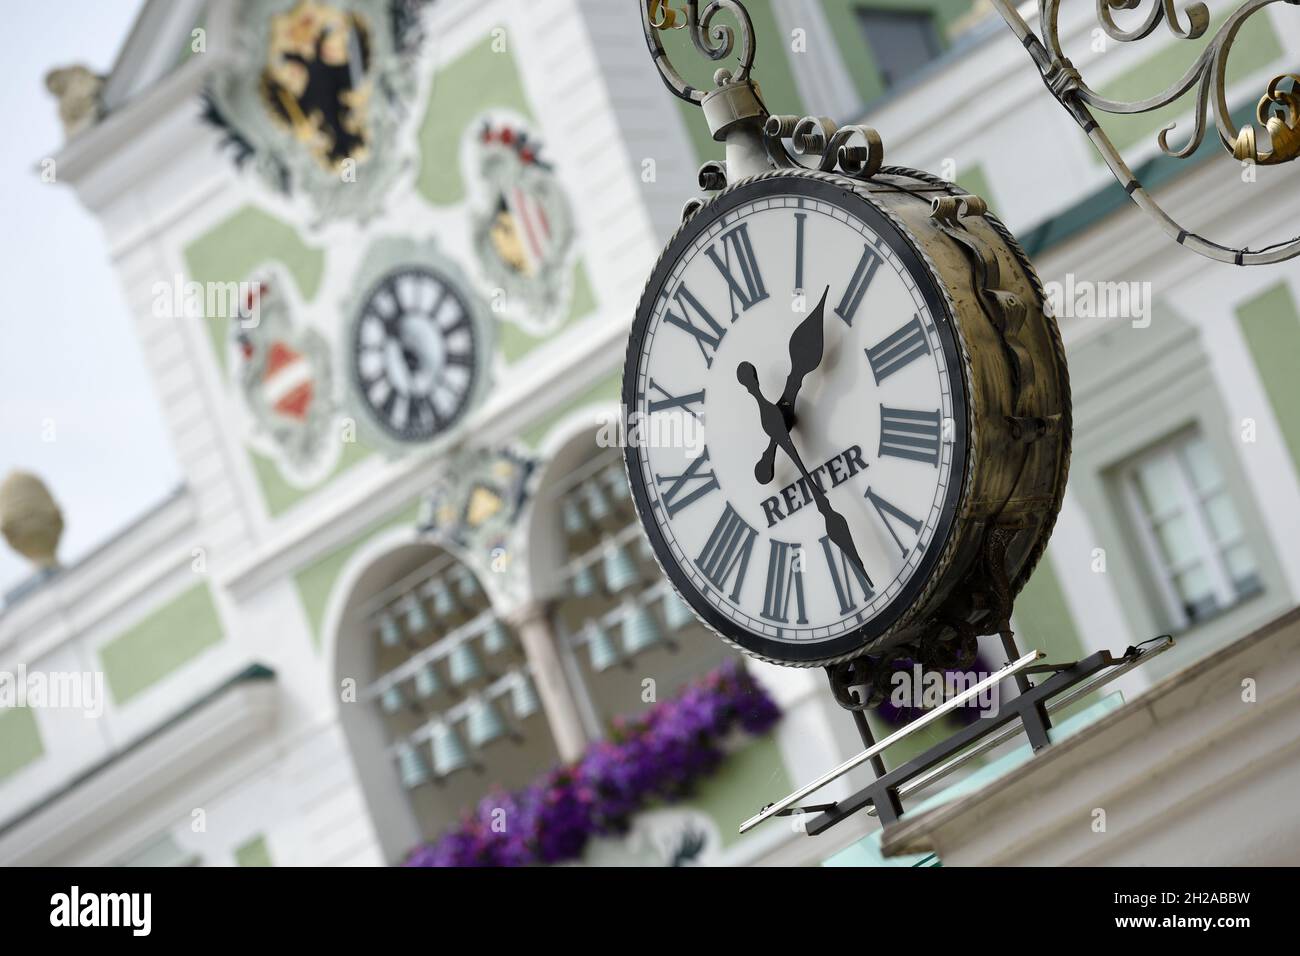 Historische Uhr à Gmunden, dahinter die Uhr des Rathclauses (Bezirk Gmunden,  Oberösterreich, Österreich) - beide Uhren zeigen eine etere Zeit an.Hist  Photo Stock - Alamy